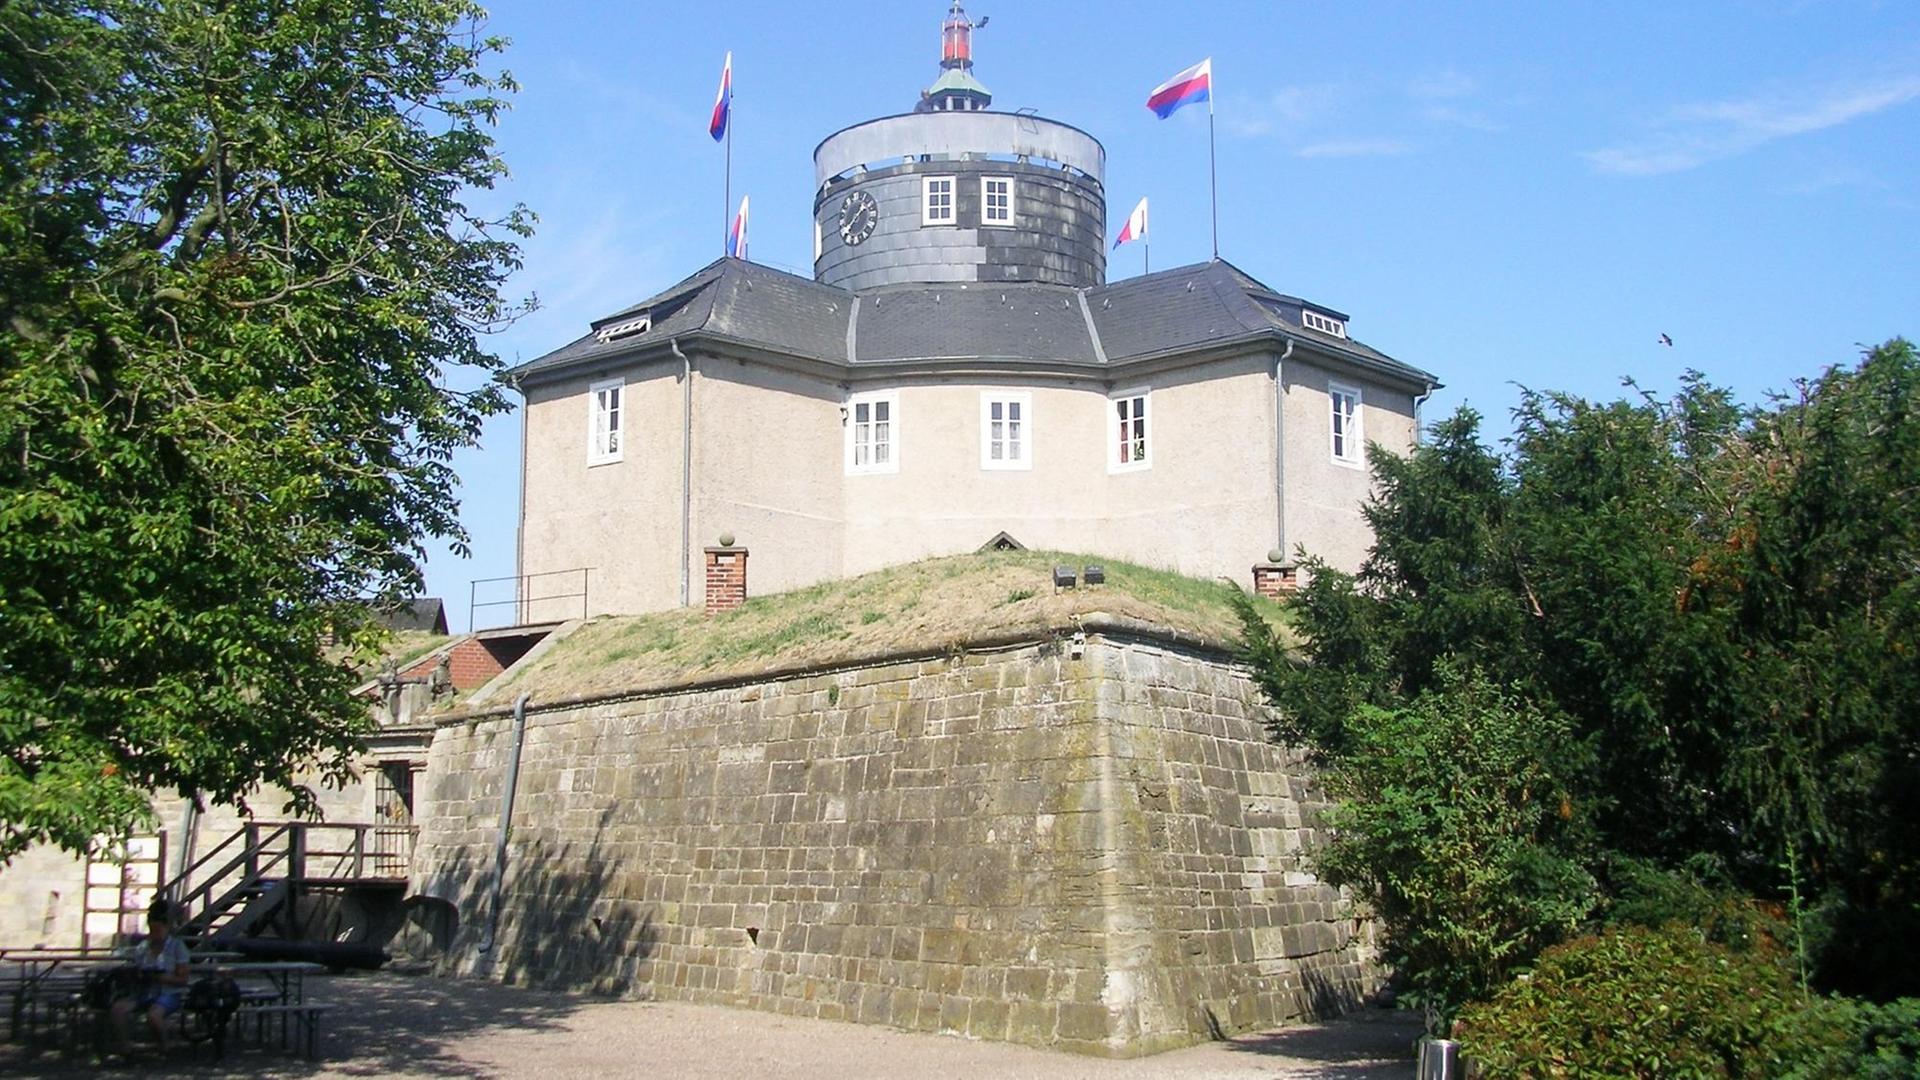 Die mitten im Steinhuder Meer gelegene Inselfestung Wilhelmstein wurde Mitte des 18. Jahrhunderts errichtet. Sie war der Rückzugsort für Graf Wilhelm, der in Friedenszeiten auf Schloss Bückeburg residierte. Heute ist sie eine regionale Touristenattraktion.